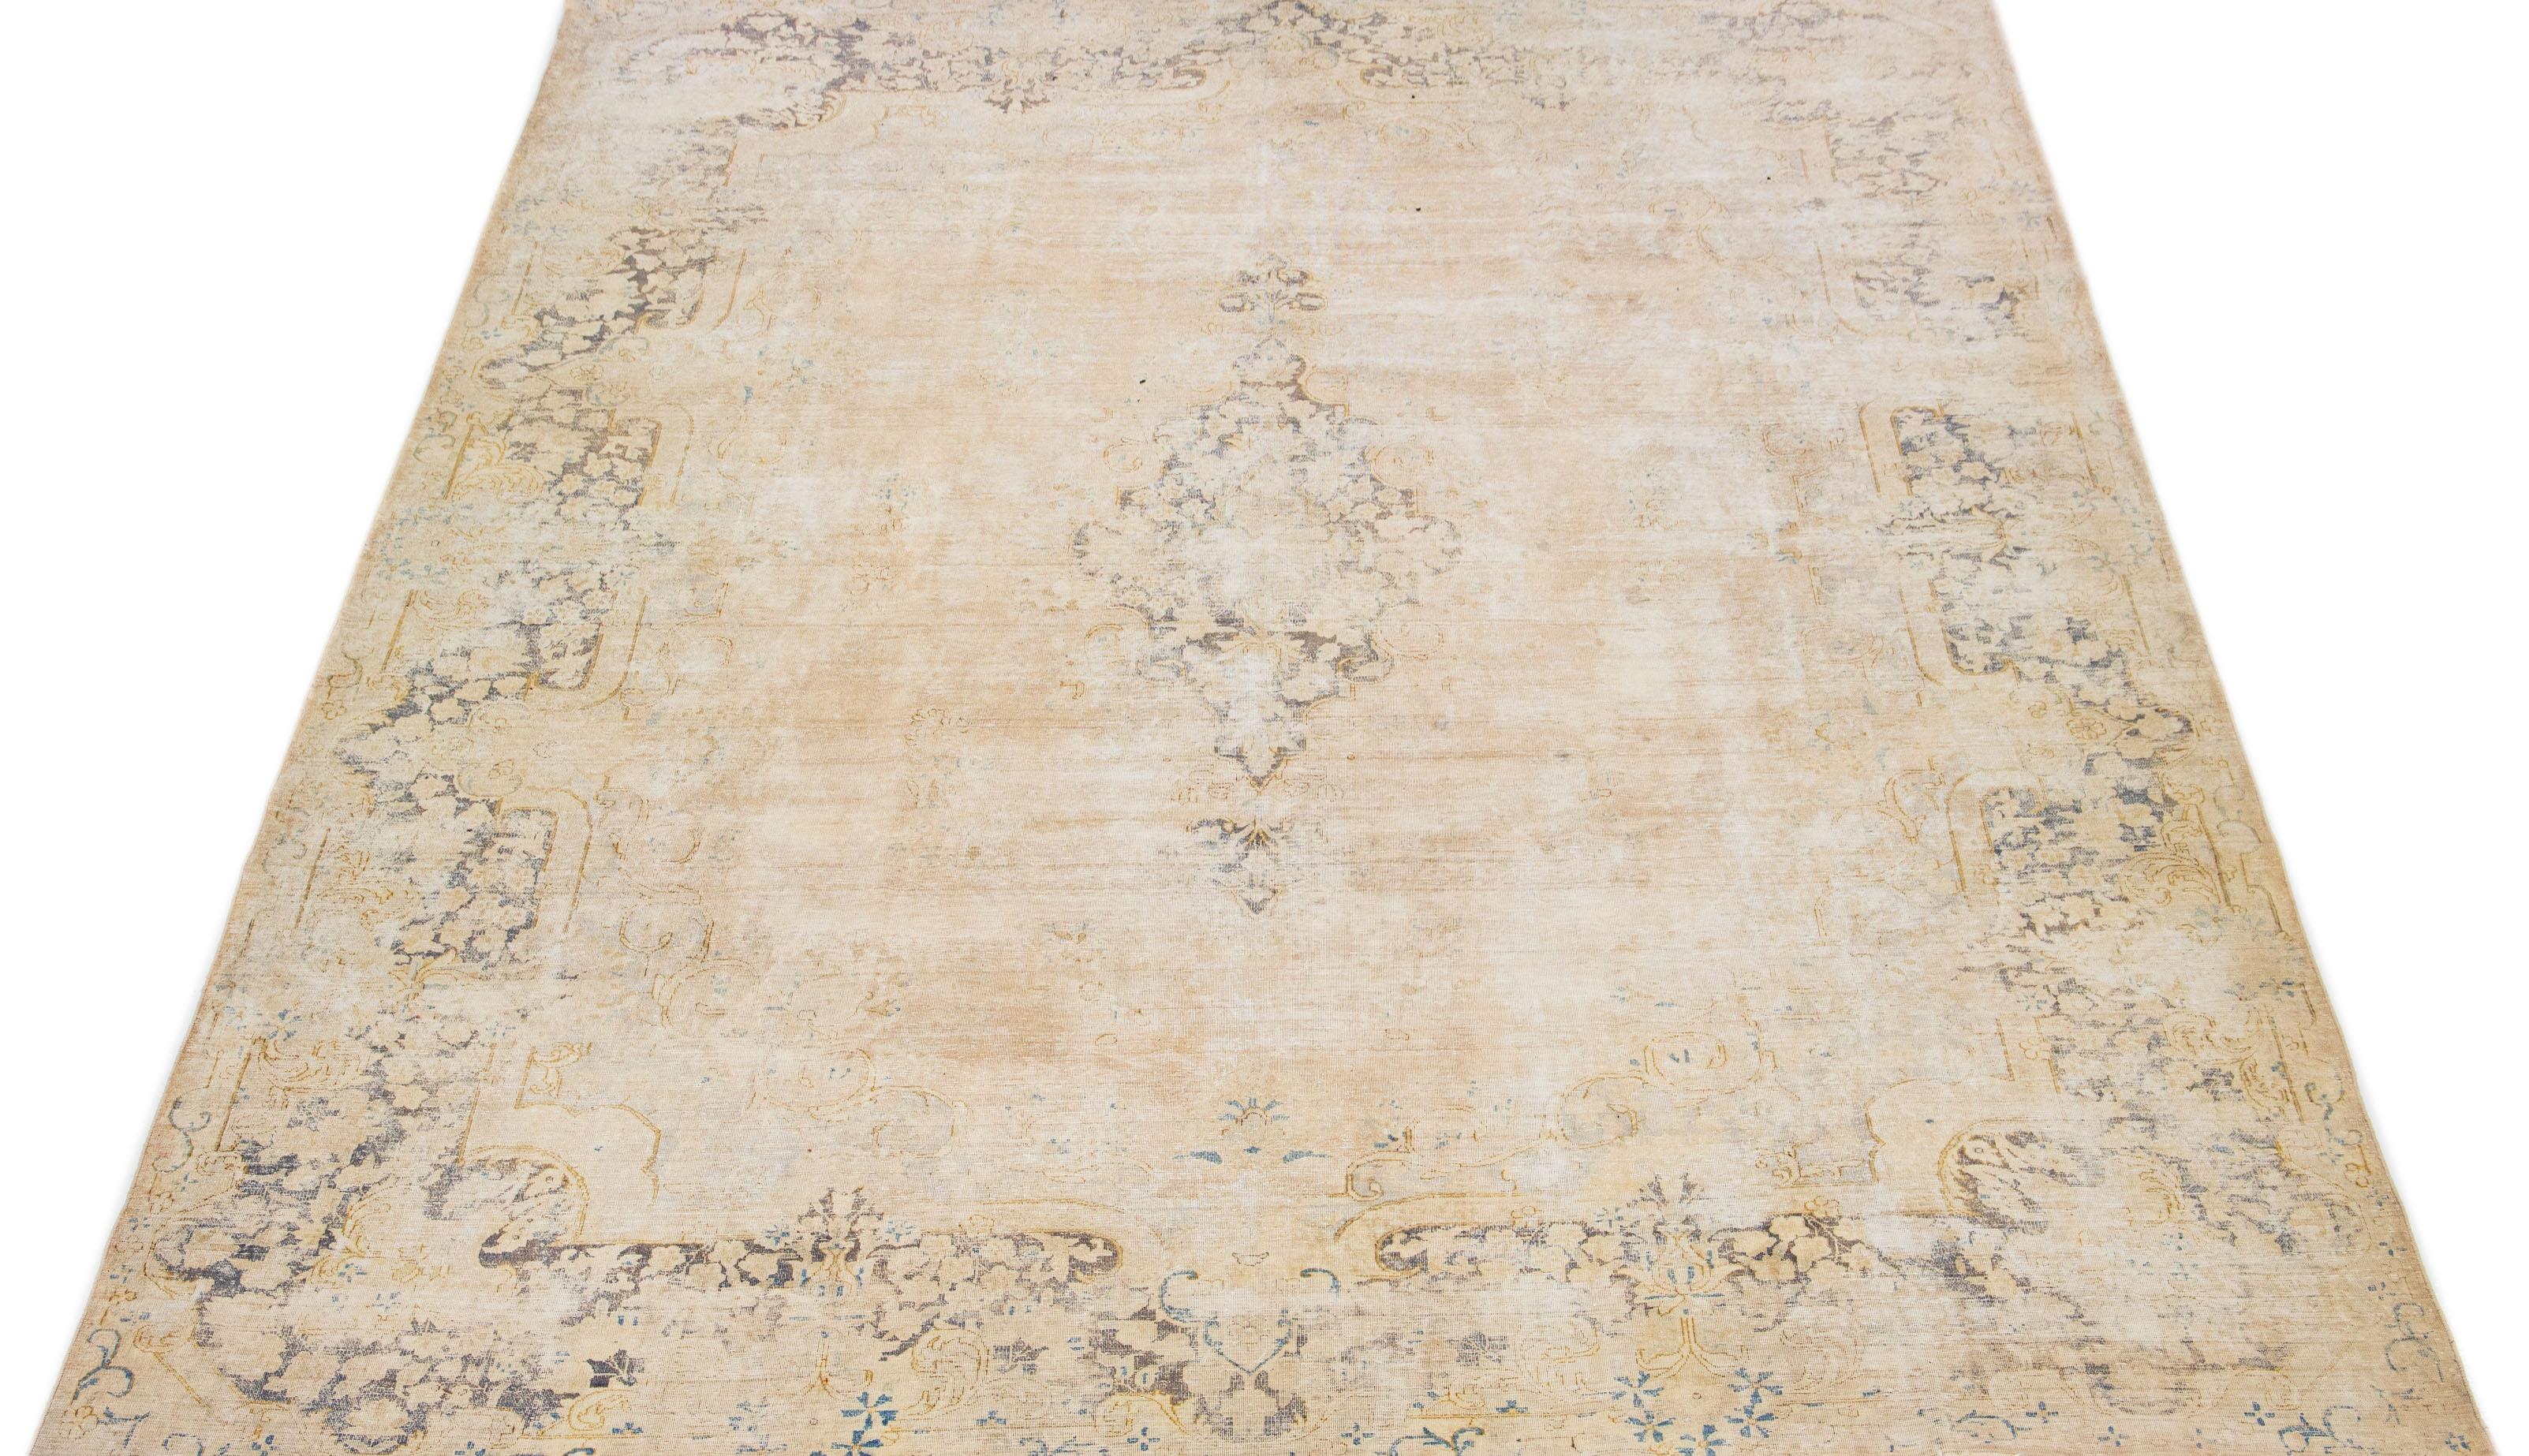 Schöner antiker handgeknüpfter Wollteppich aus Kerman mit beigem Feld. Dieser Perserteppich hat graue Akzente in einem prächtigen floralen Medaillonmuster.

Dieser Teppich misst 9'8